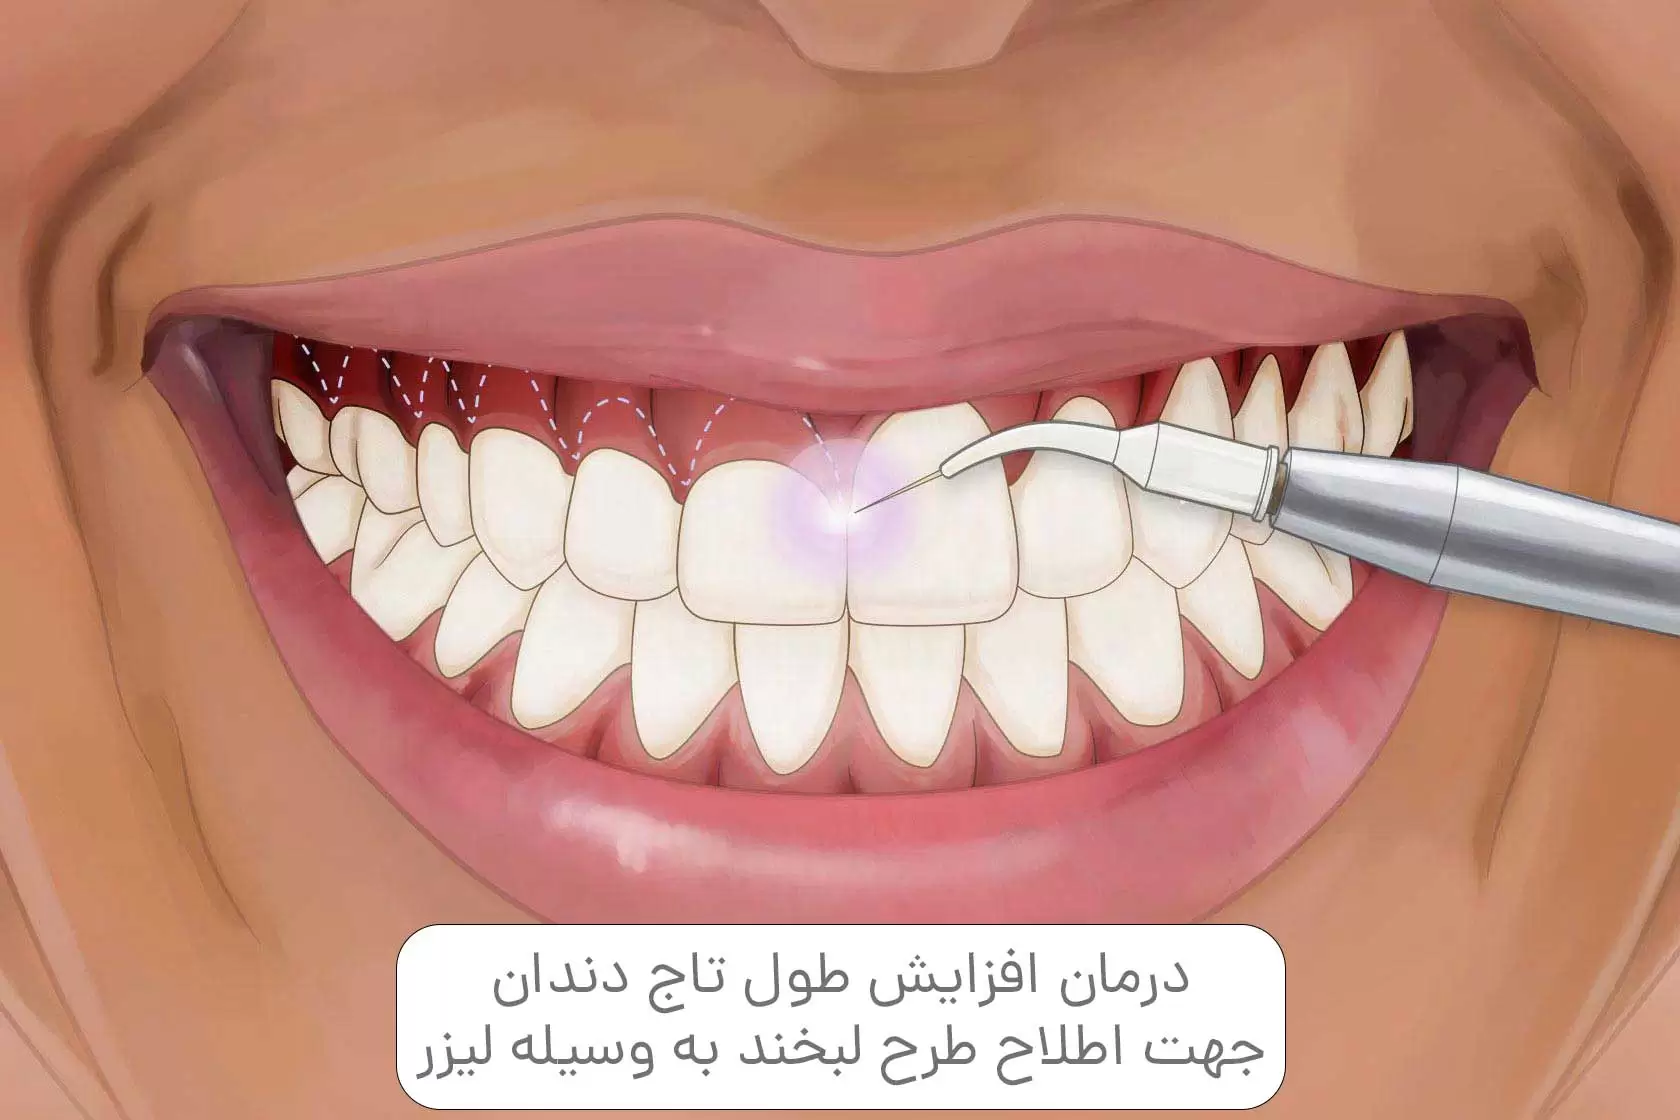 درمان افزایش طول تاج دندان جهت اطلاح طرح لبخند به وسیله لیزر